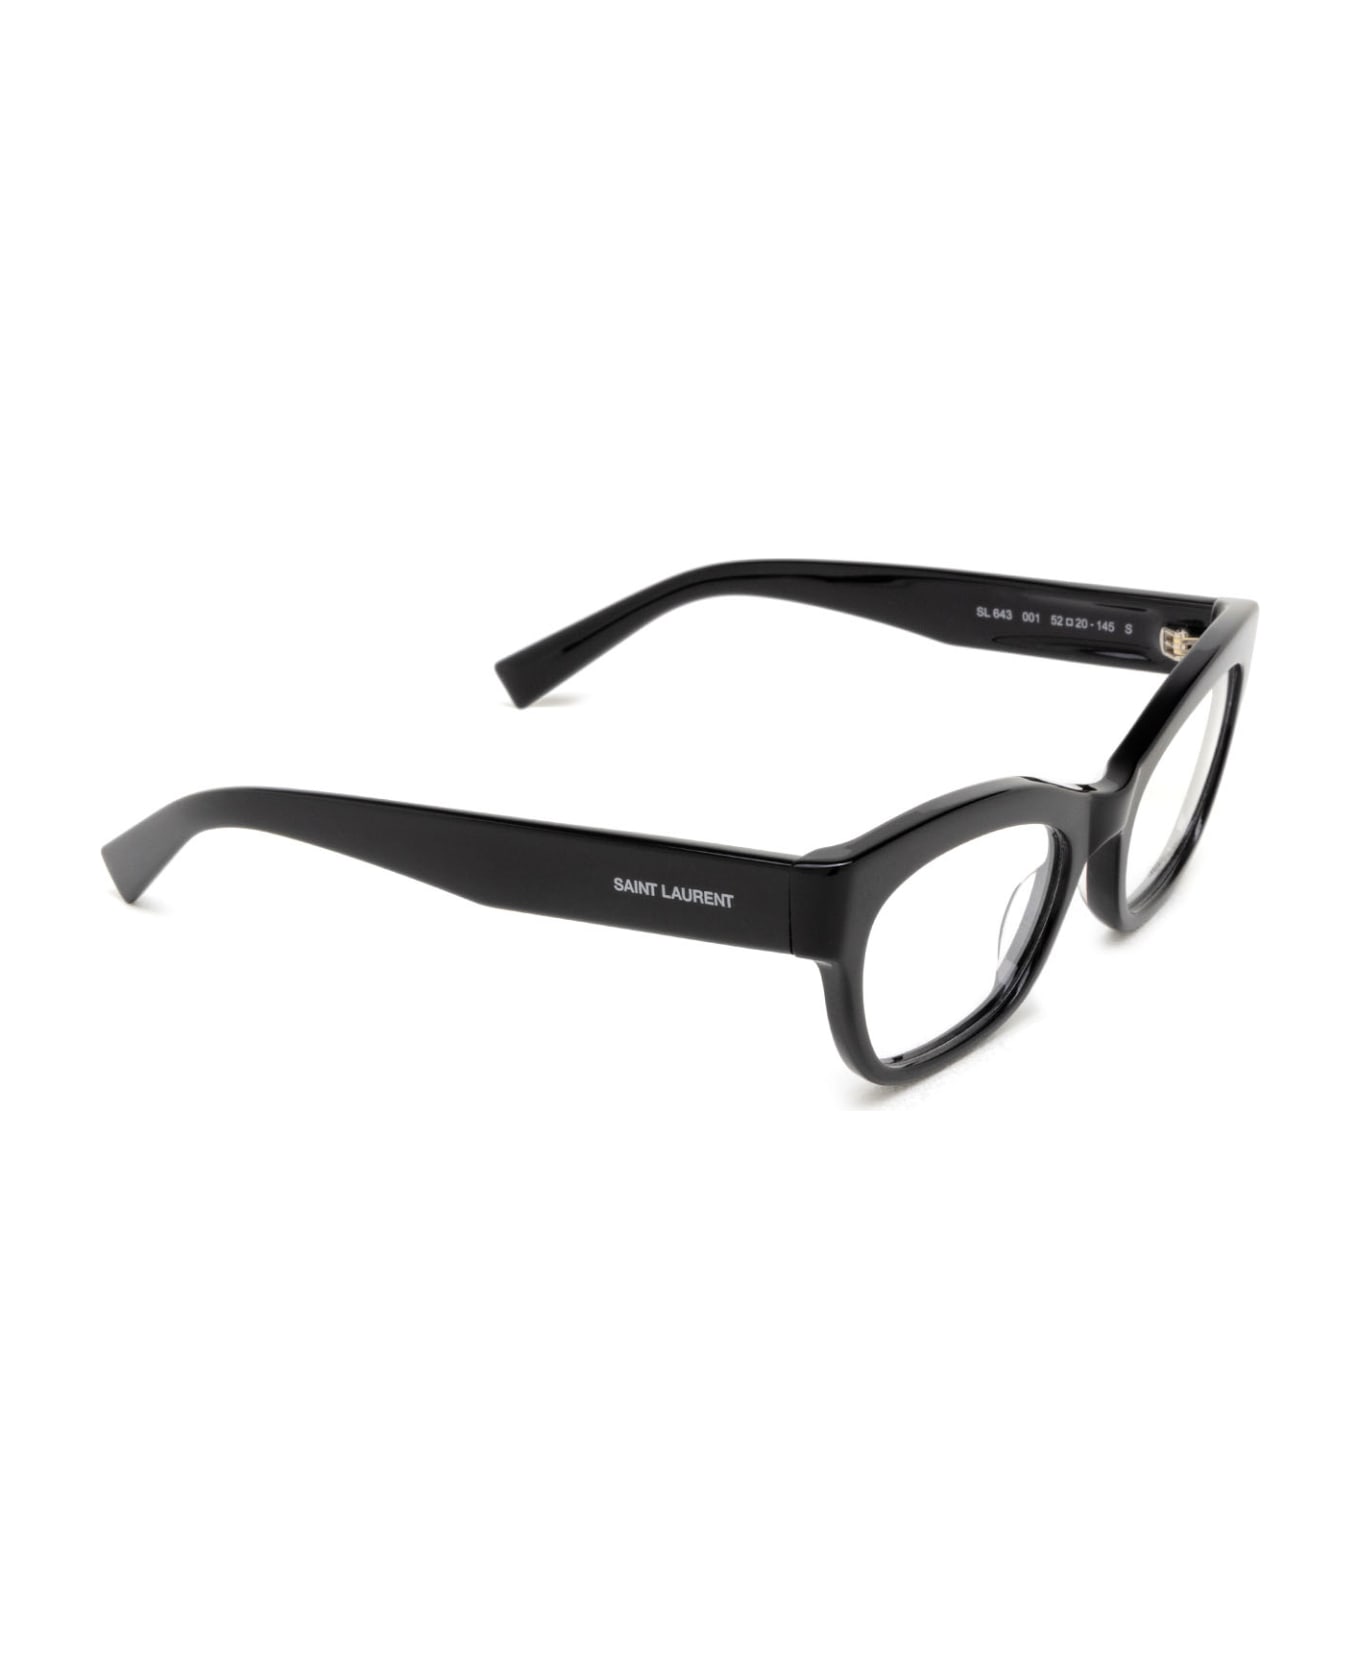 Saint Laurent Eyewear Sl 643 Black Glasses - Black アイウェア